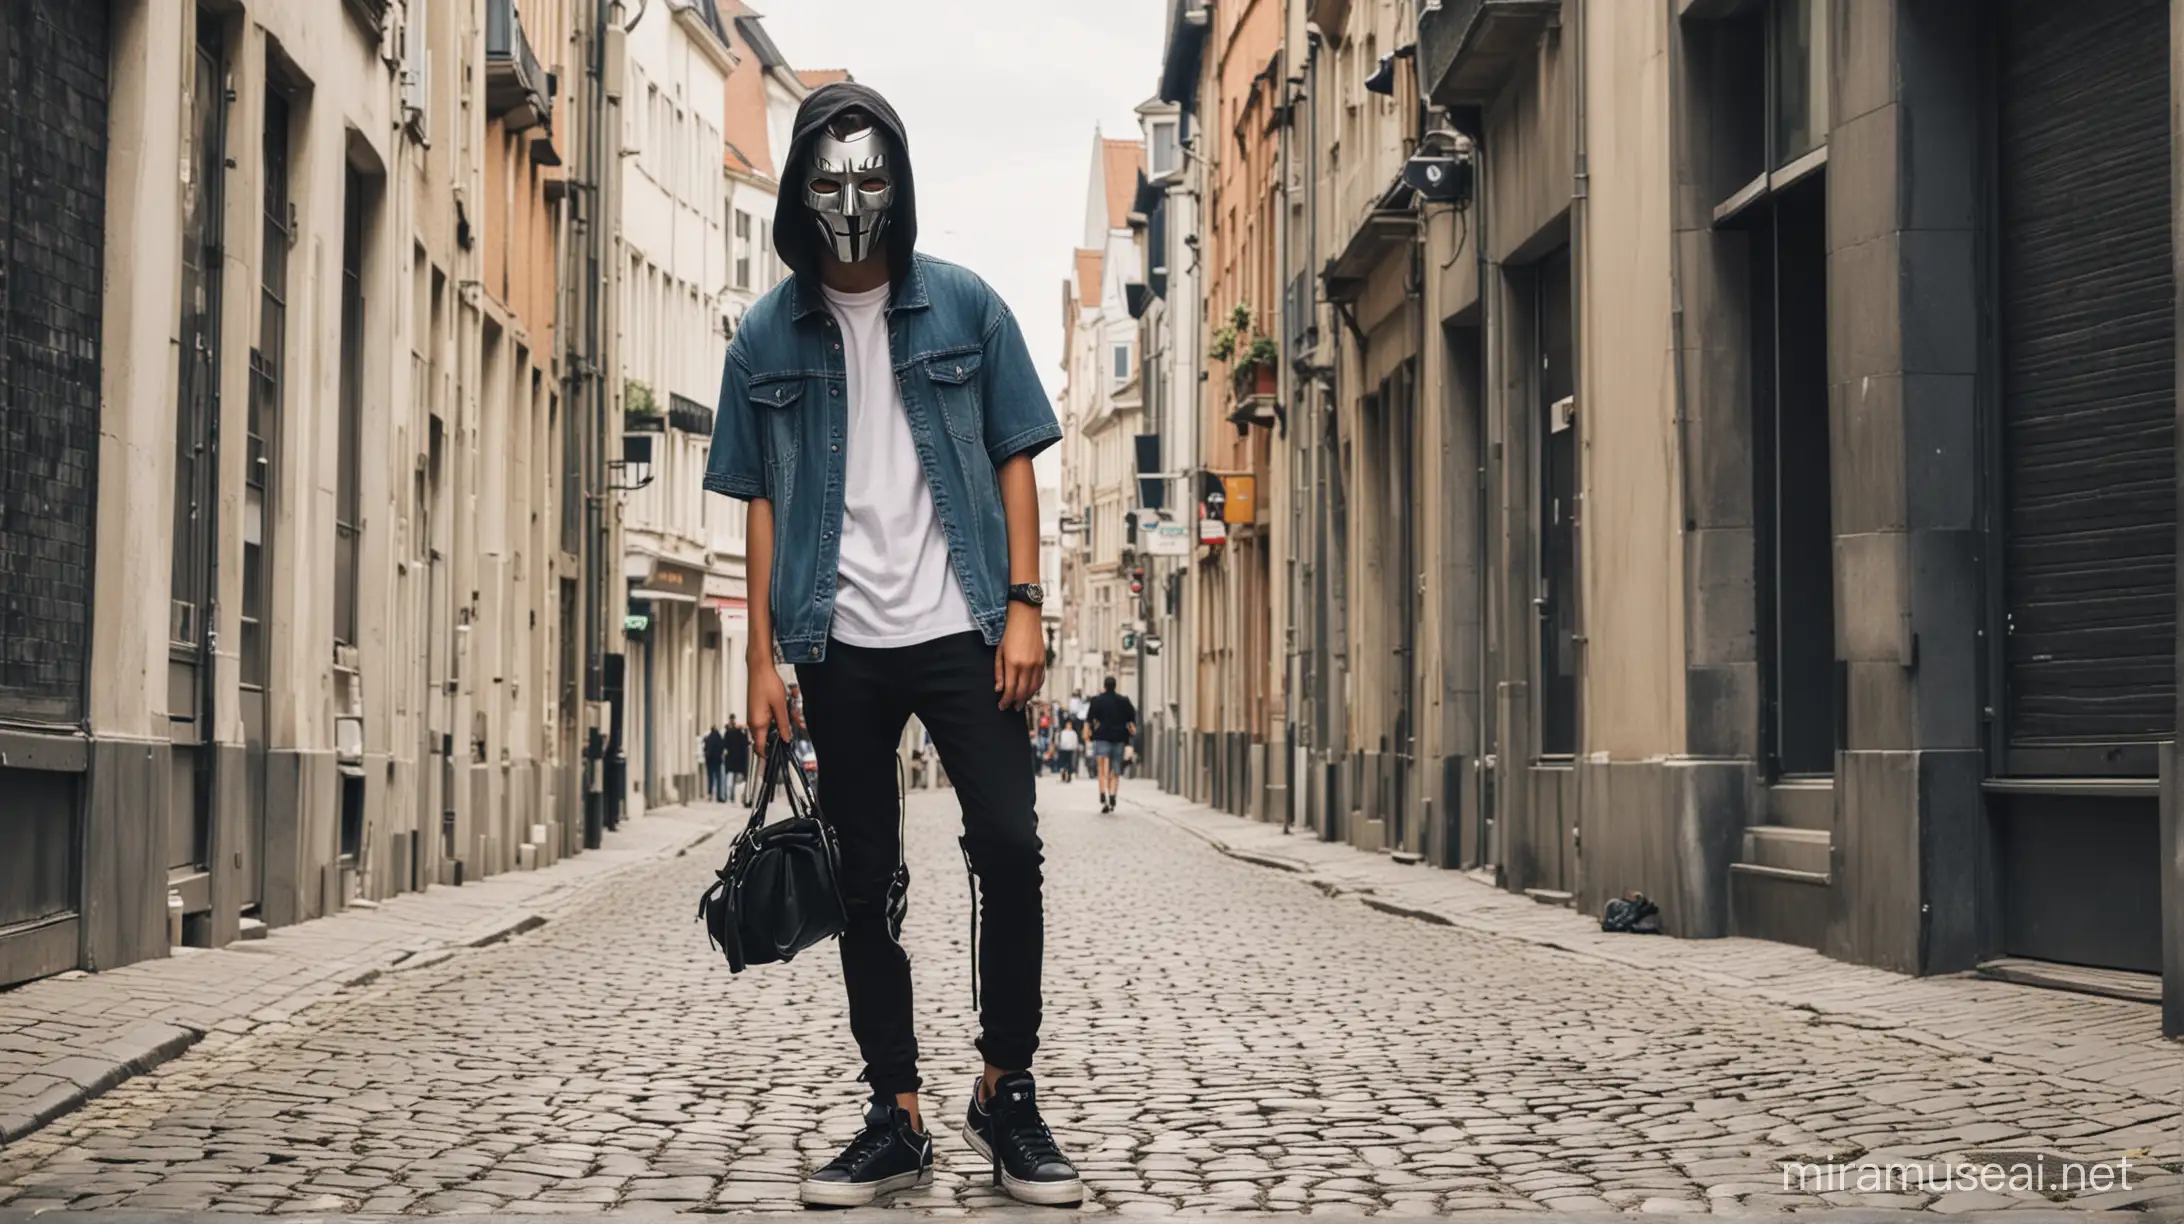 Seorang Remaja 16 Tahun Pake Topeng Hacker Pake Outfit keren pake sepatu Sedang berada Di Ibukota Belgia Pada Musim Panas☀️ suasana ramai 